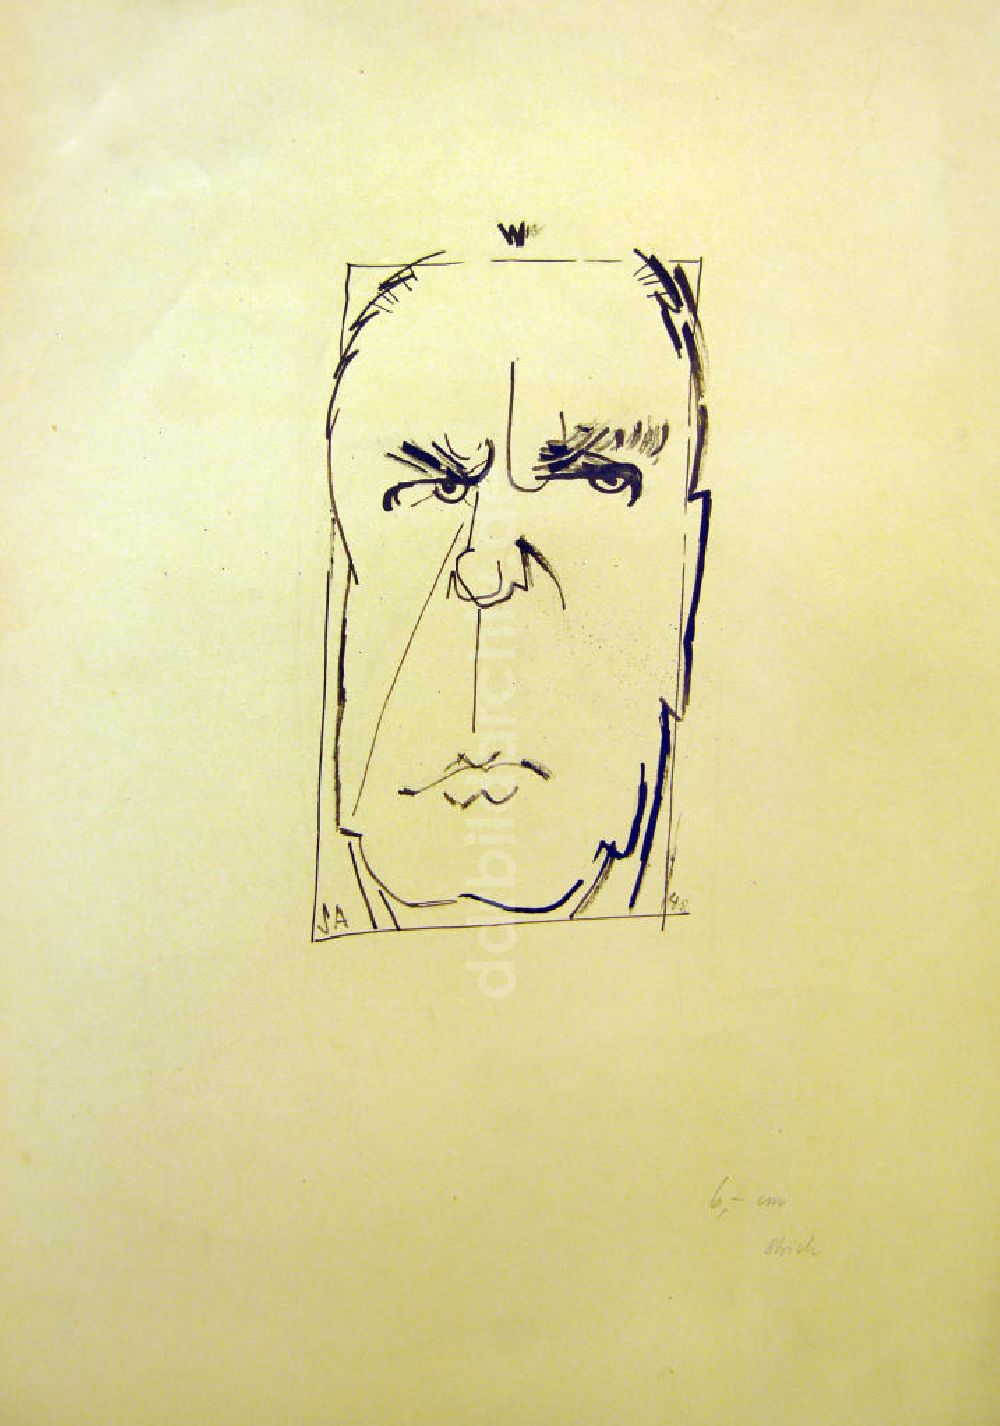 DDR-Fotoarchiv: Berlin - Zeichnung von Herbert Sandberg Männergesicht aus dem Jahr 1948